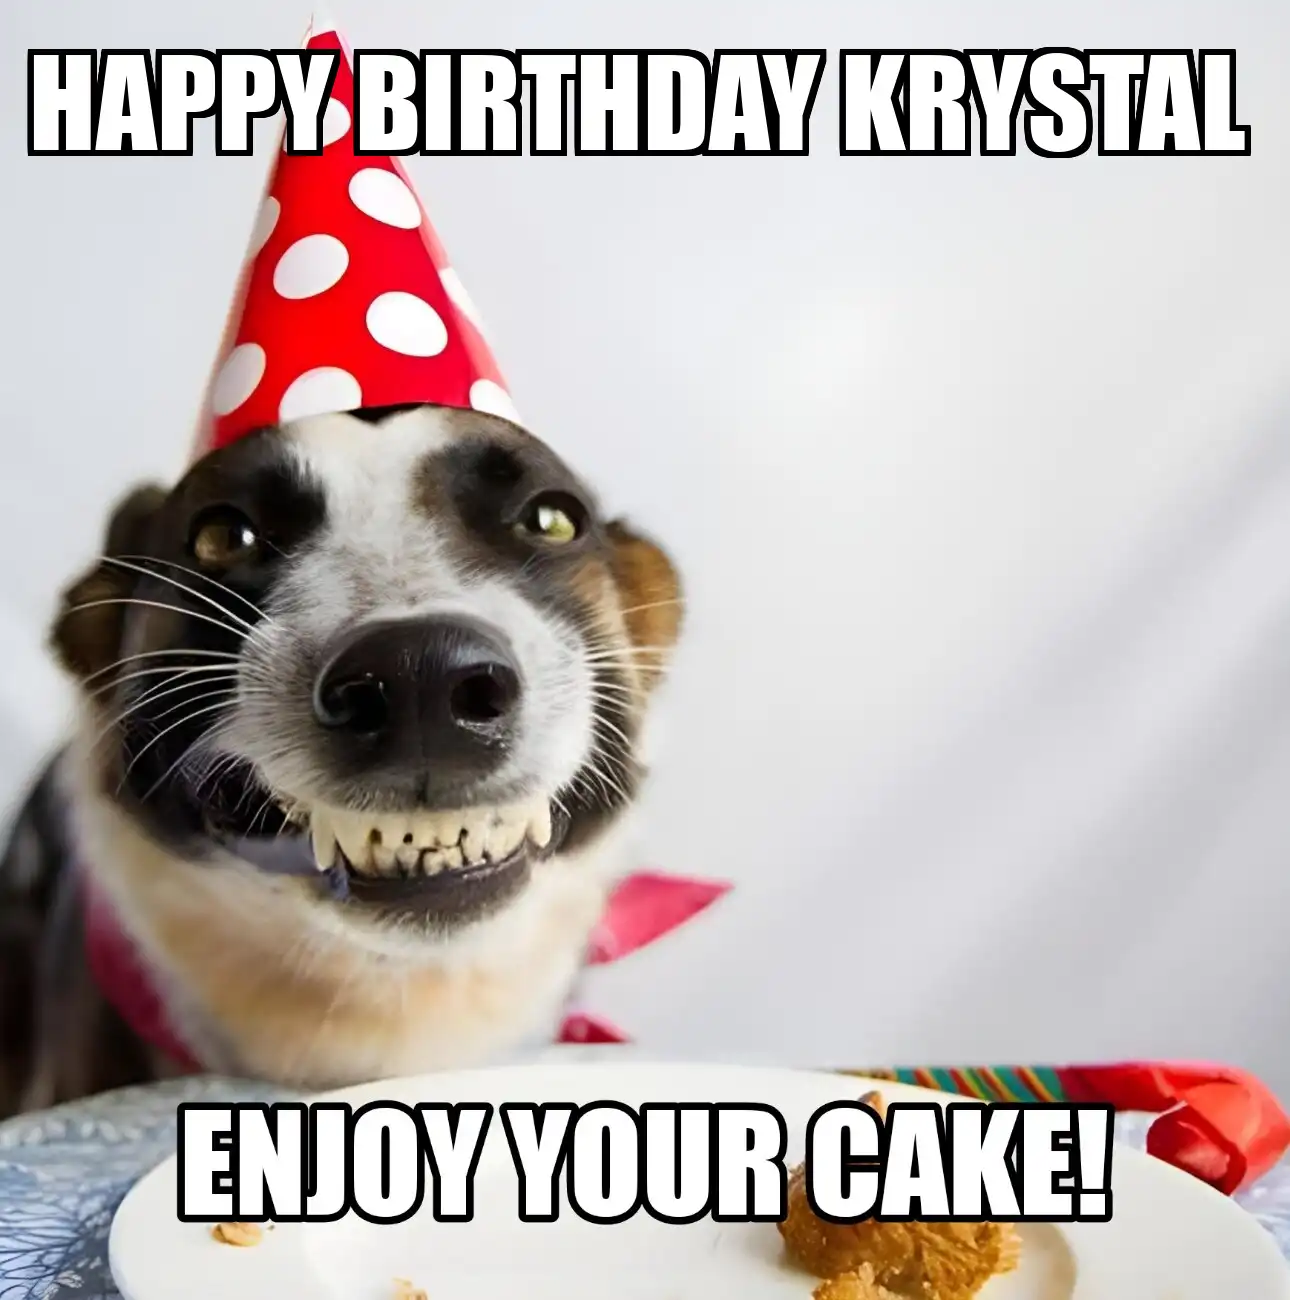 Happy Birthday Krystal Enjoy Your Cake Dog Meme